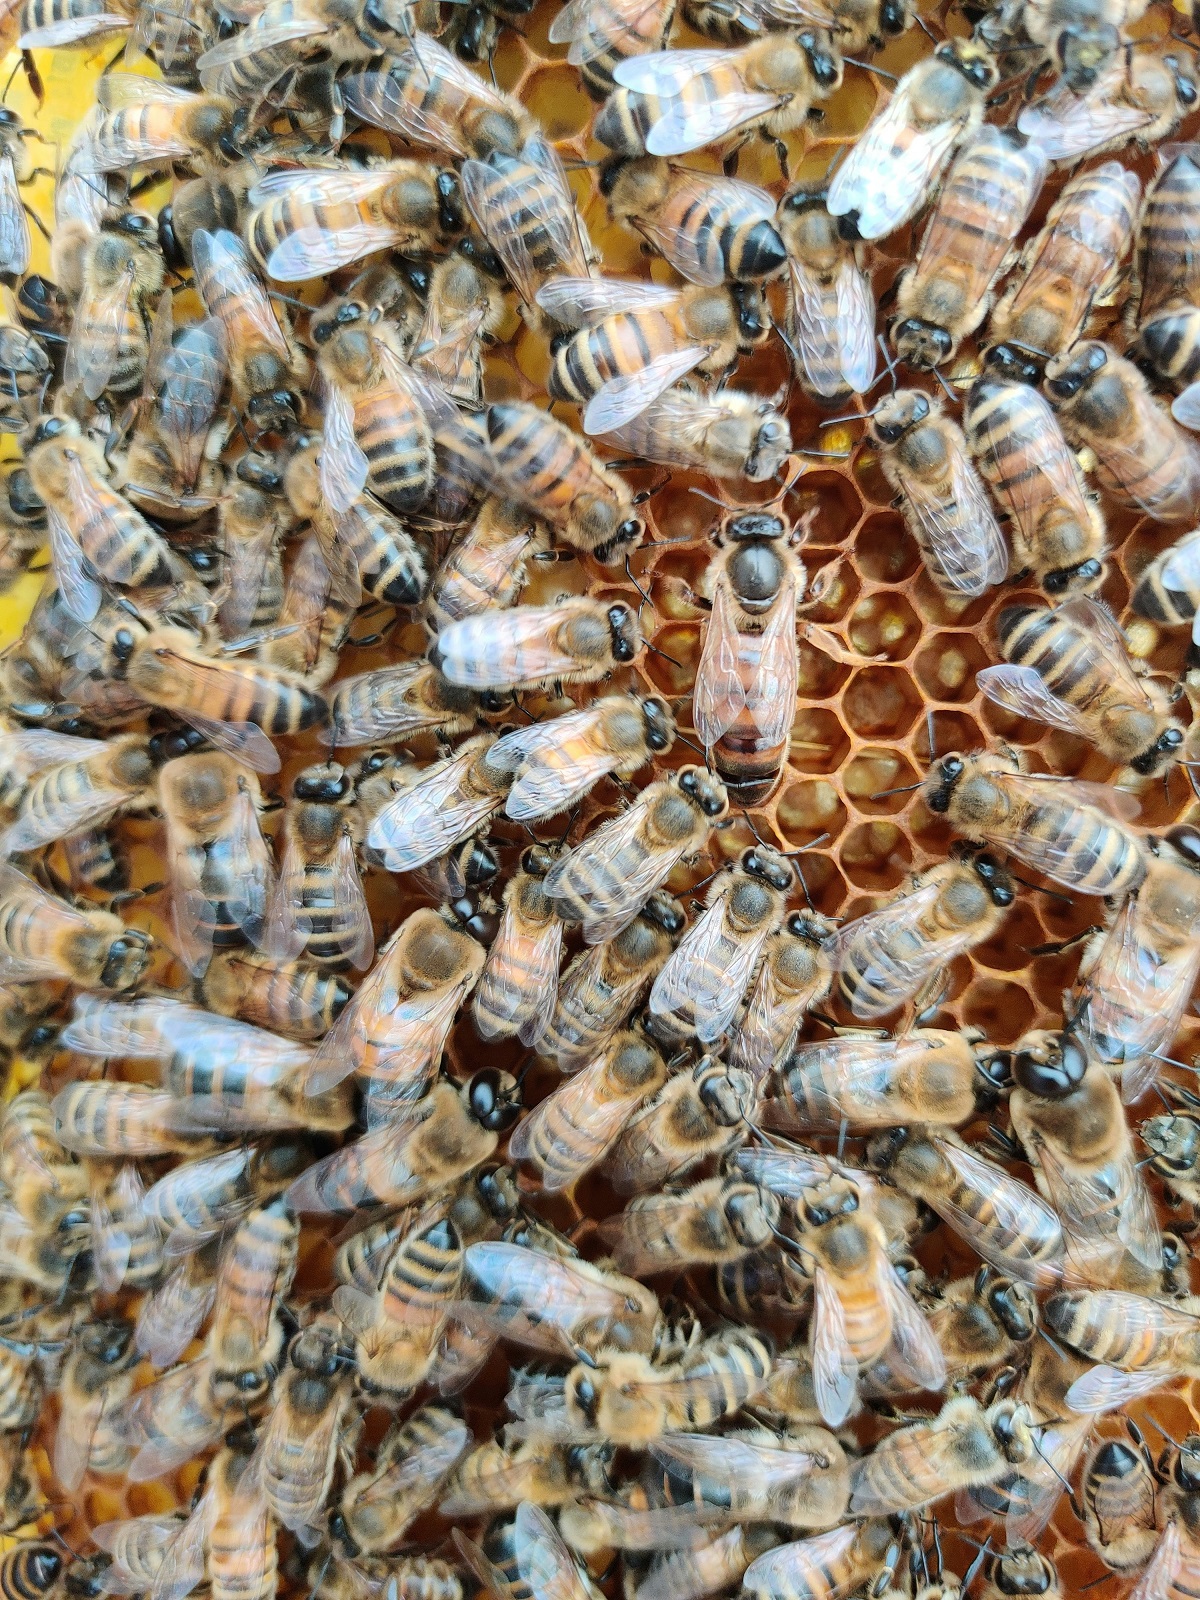 Las abejas se dispersaron y picaron a varios transeúntes. 